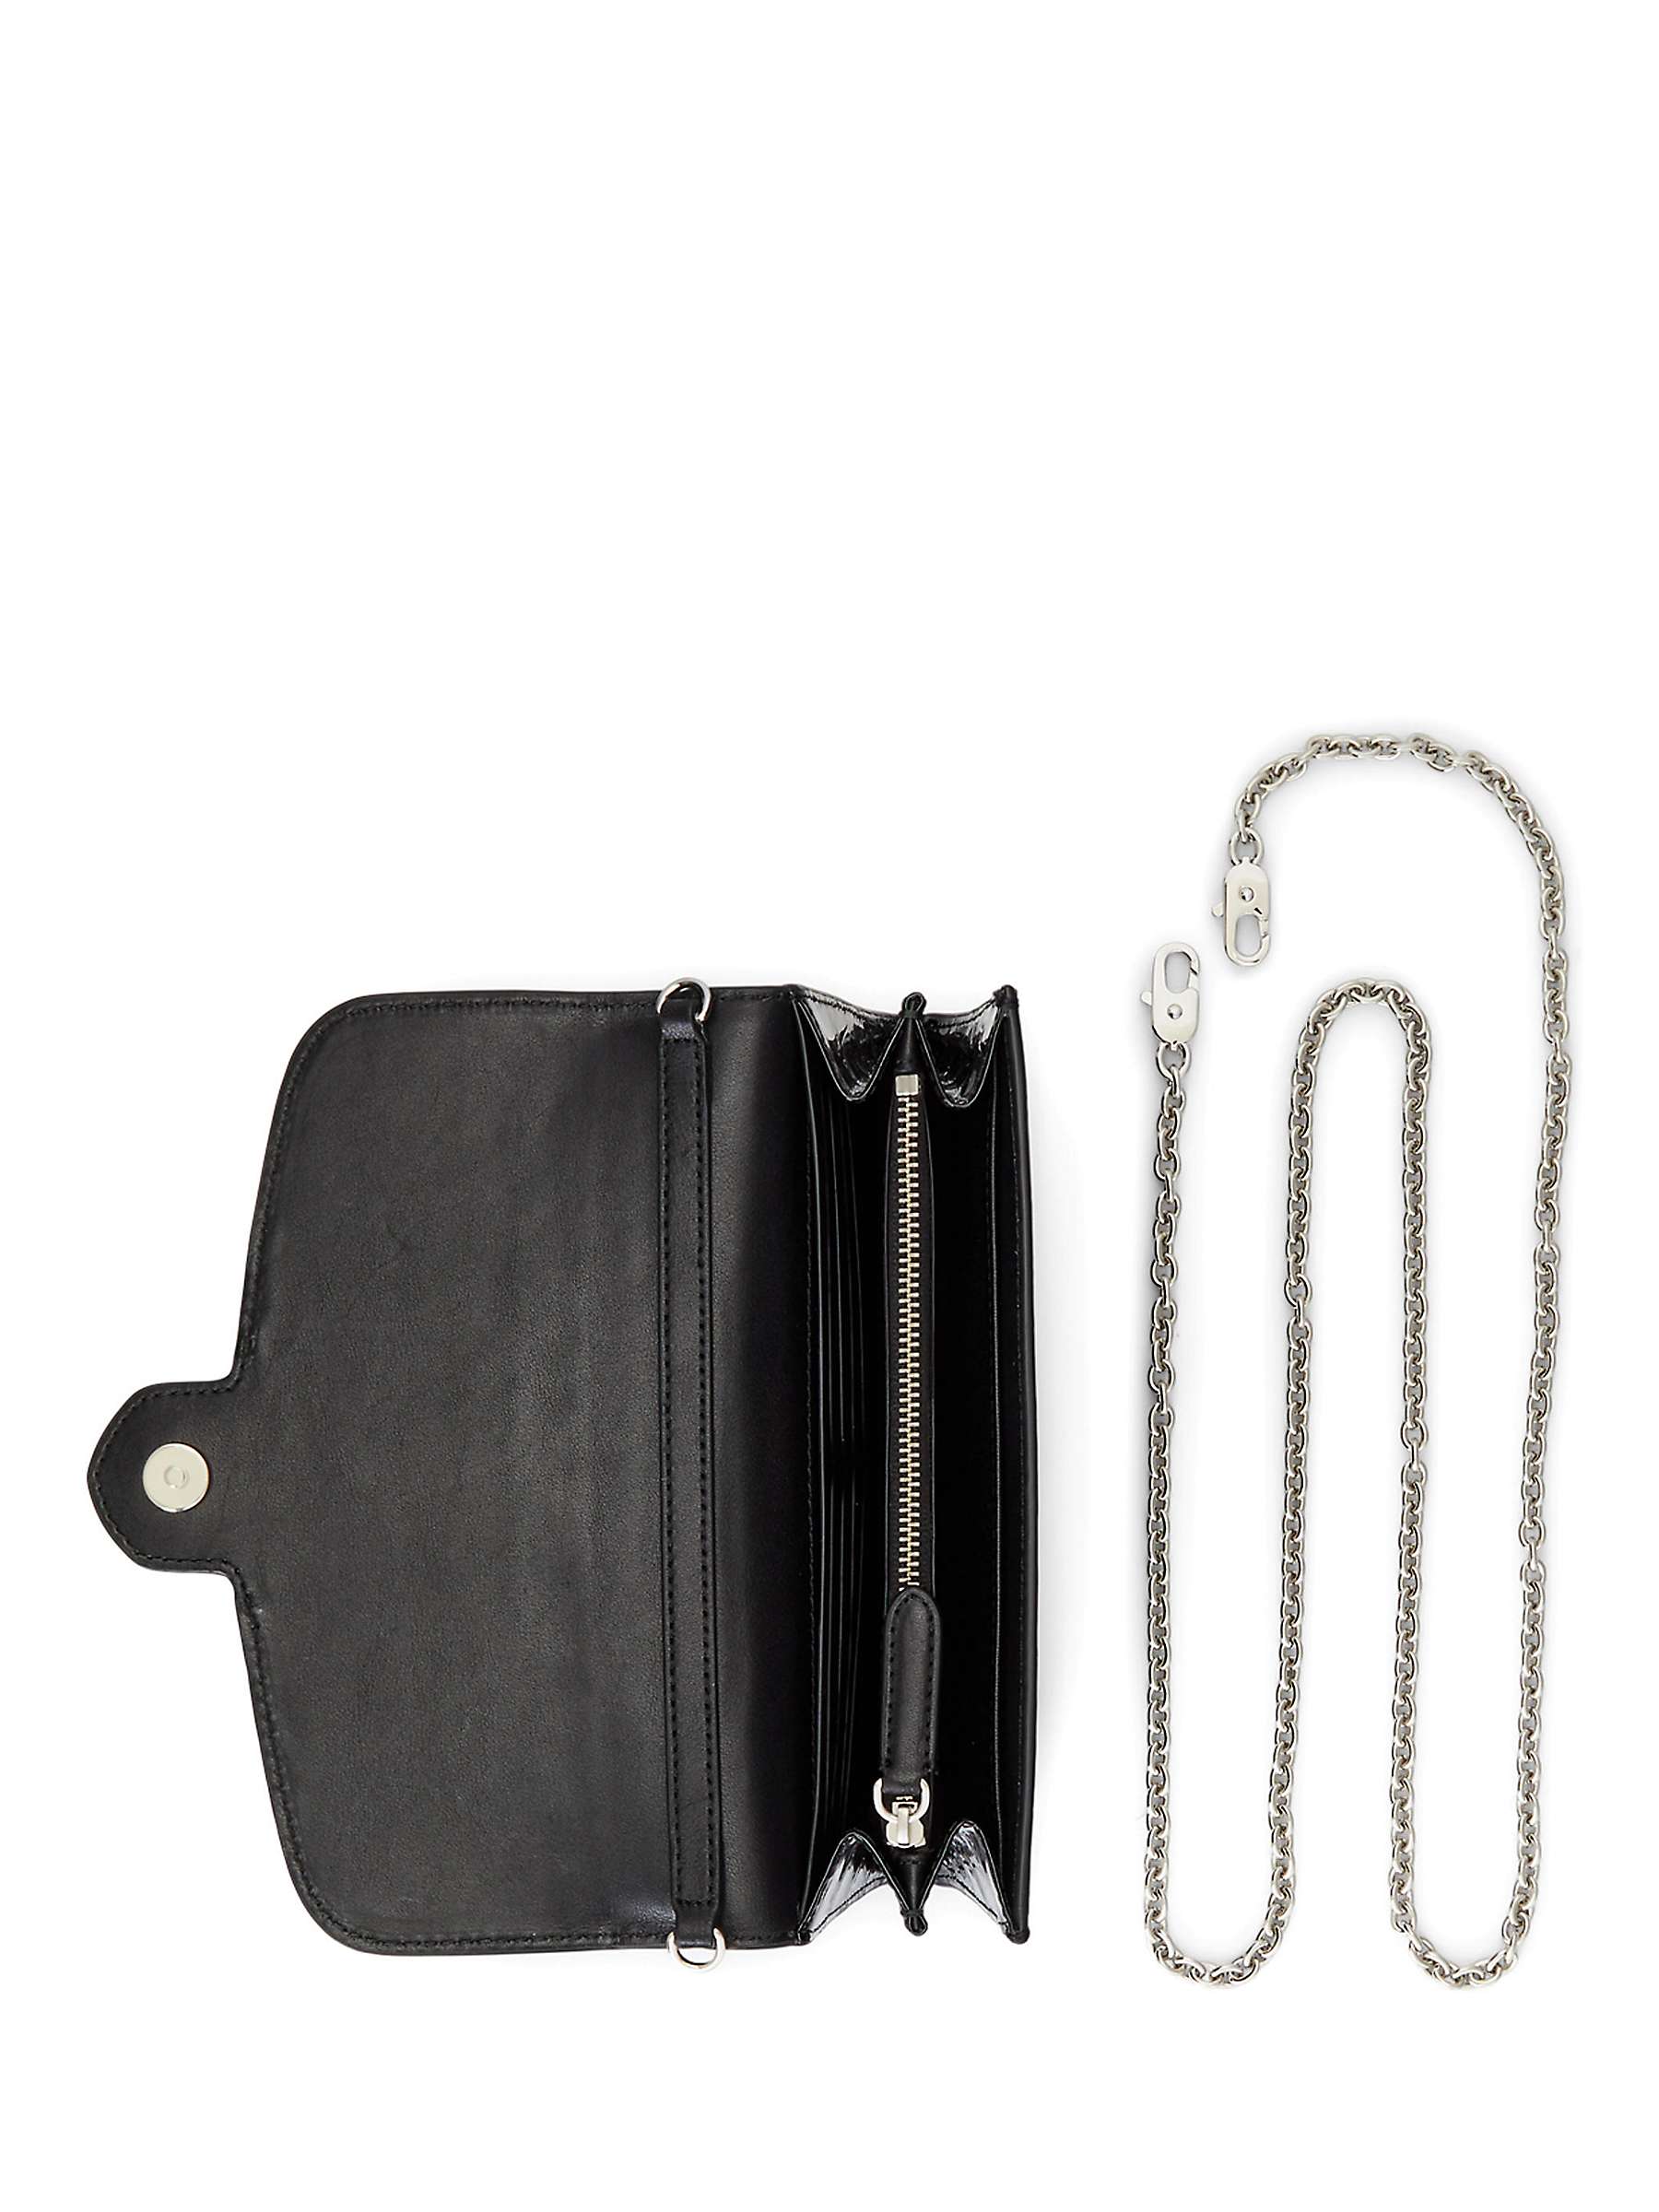 Buy Lauren Ralph Lauren Adair Leather Croc Cross Body Bag, Black Online at johnlewis.com